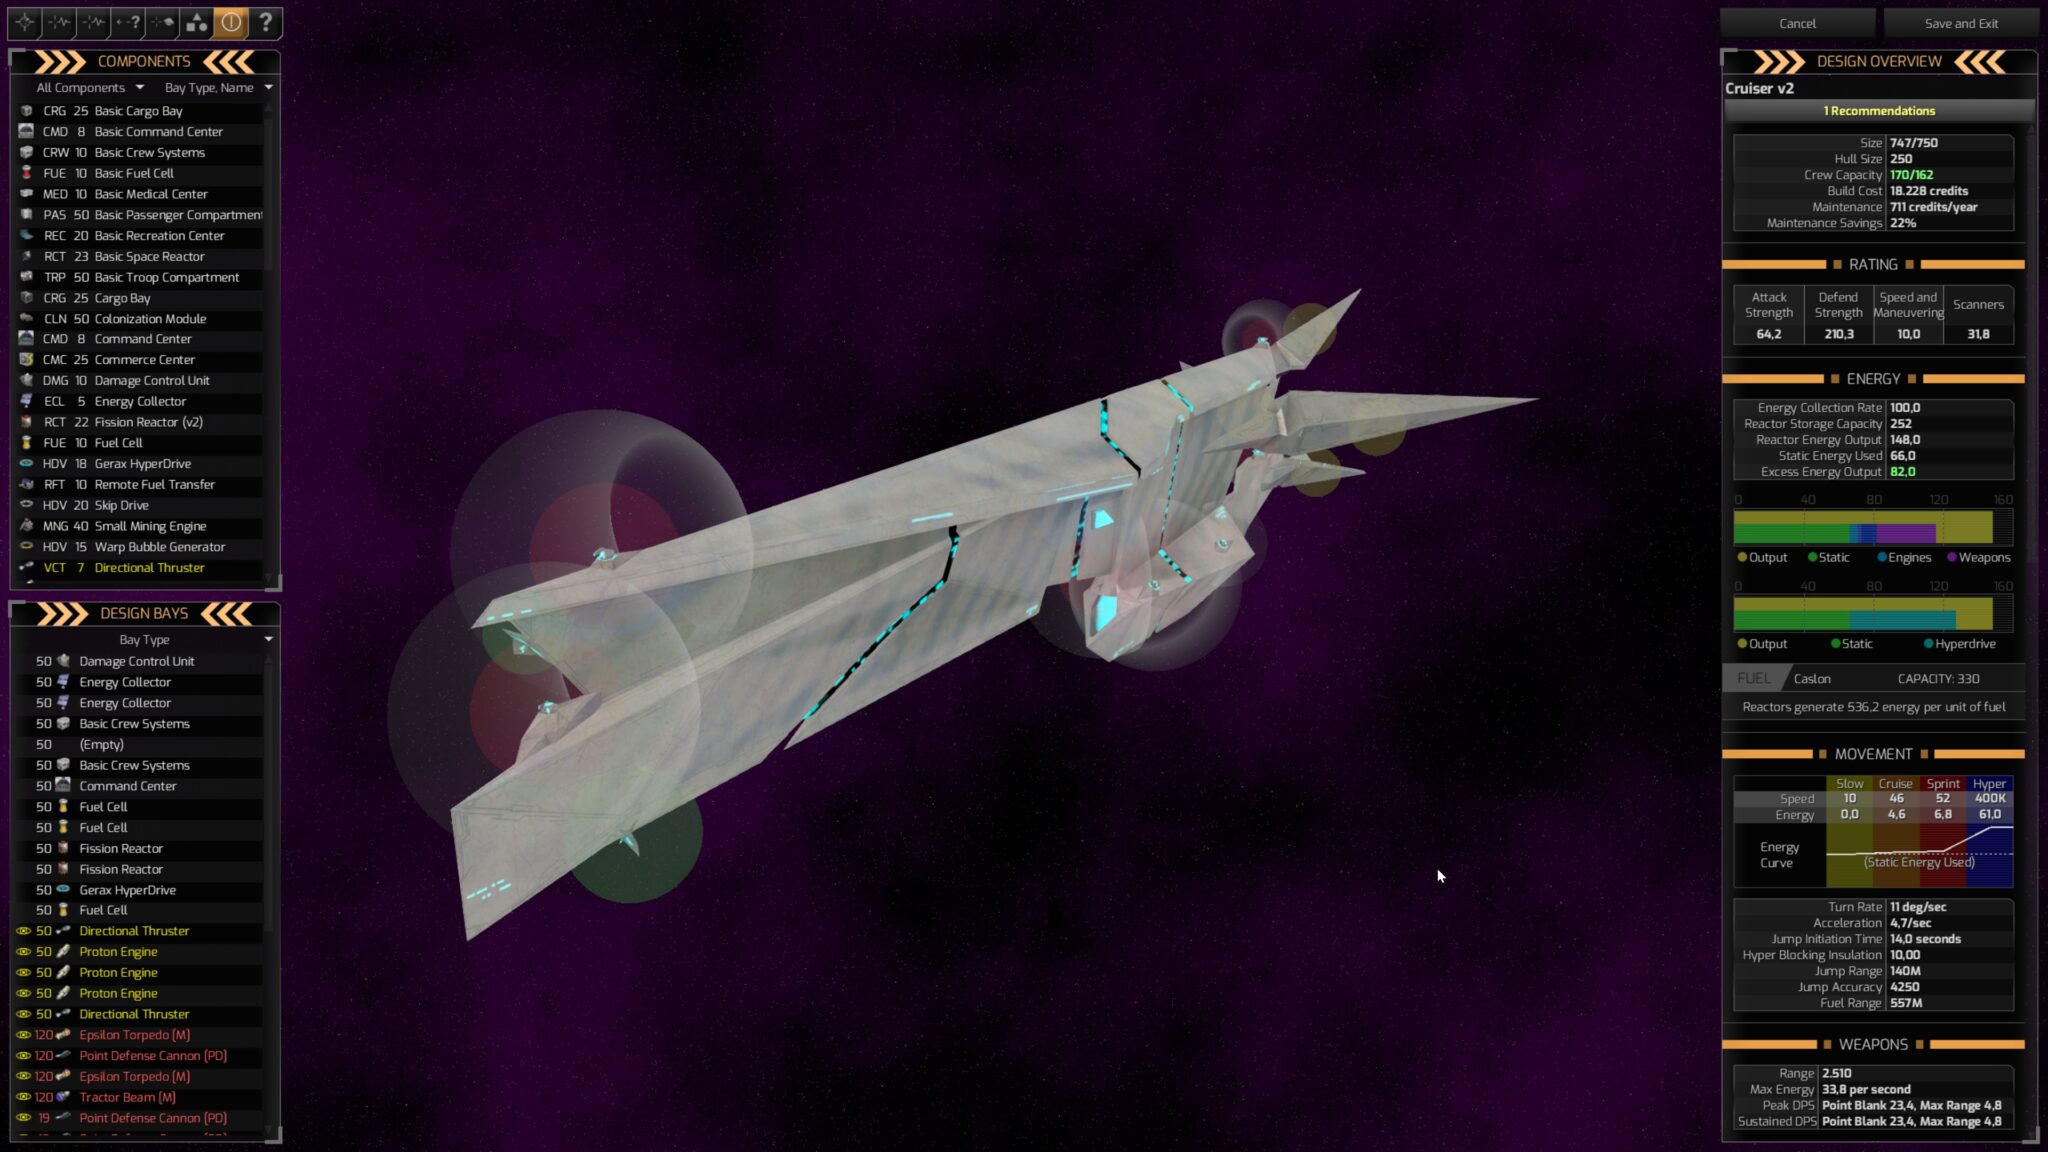 Lodě lze vybavit zbraněmi, motory & Co. prostřednictvím editoru, který pak Distant Worlds 2 skutečně zobrazí na 3D modelu.